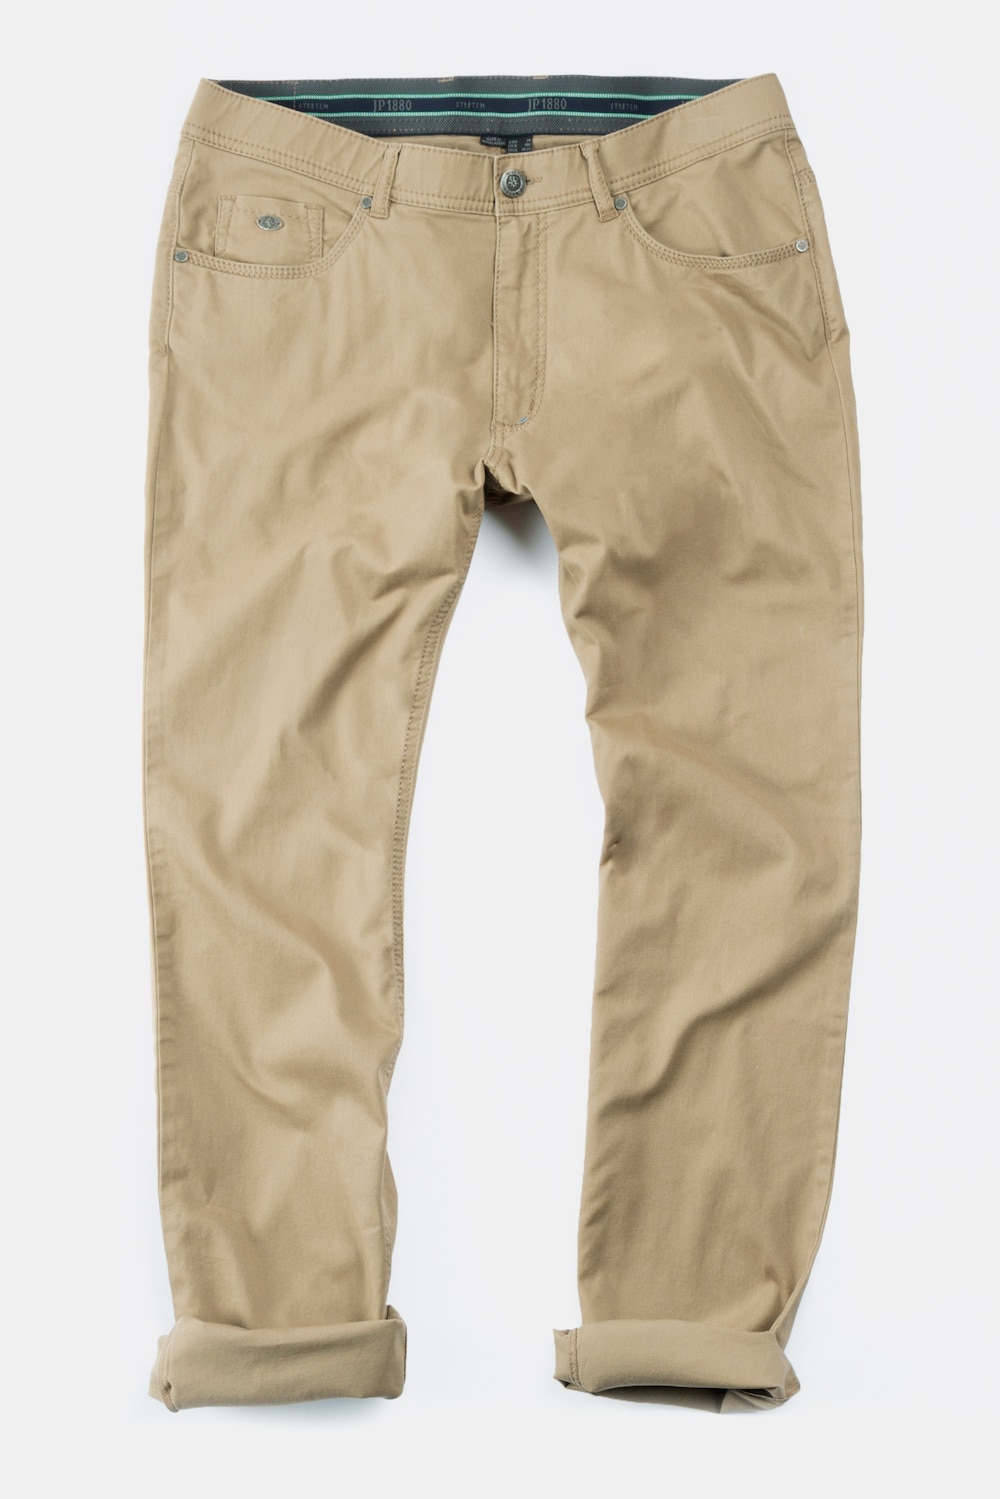 5 pocket broek, grote maten, , heren, bruin, maat 32, katoen, jp1880